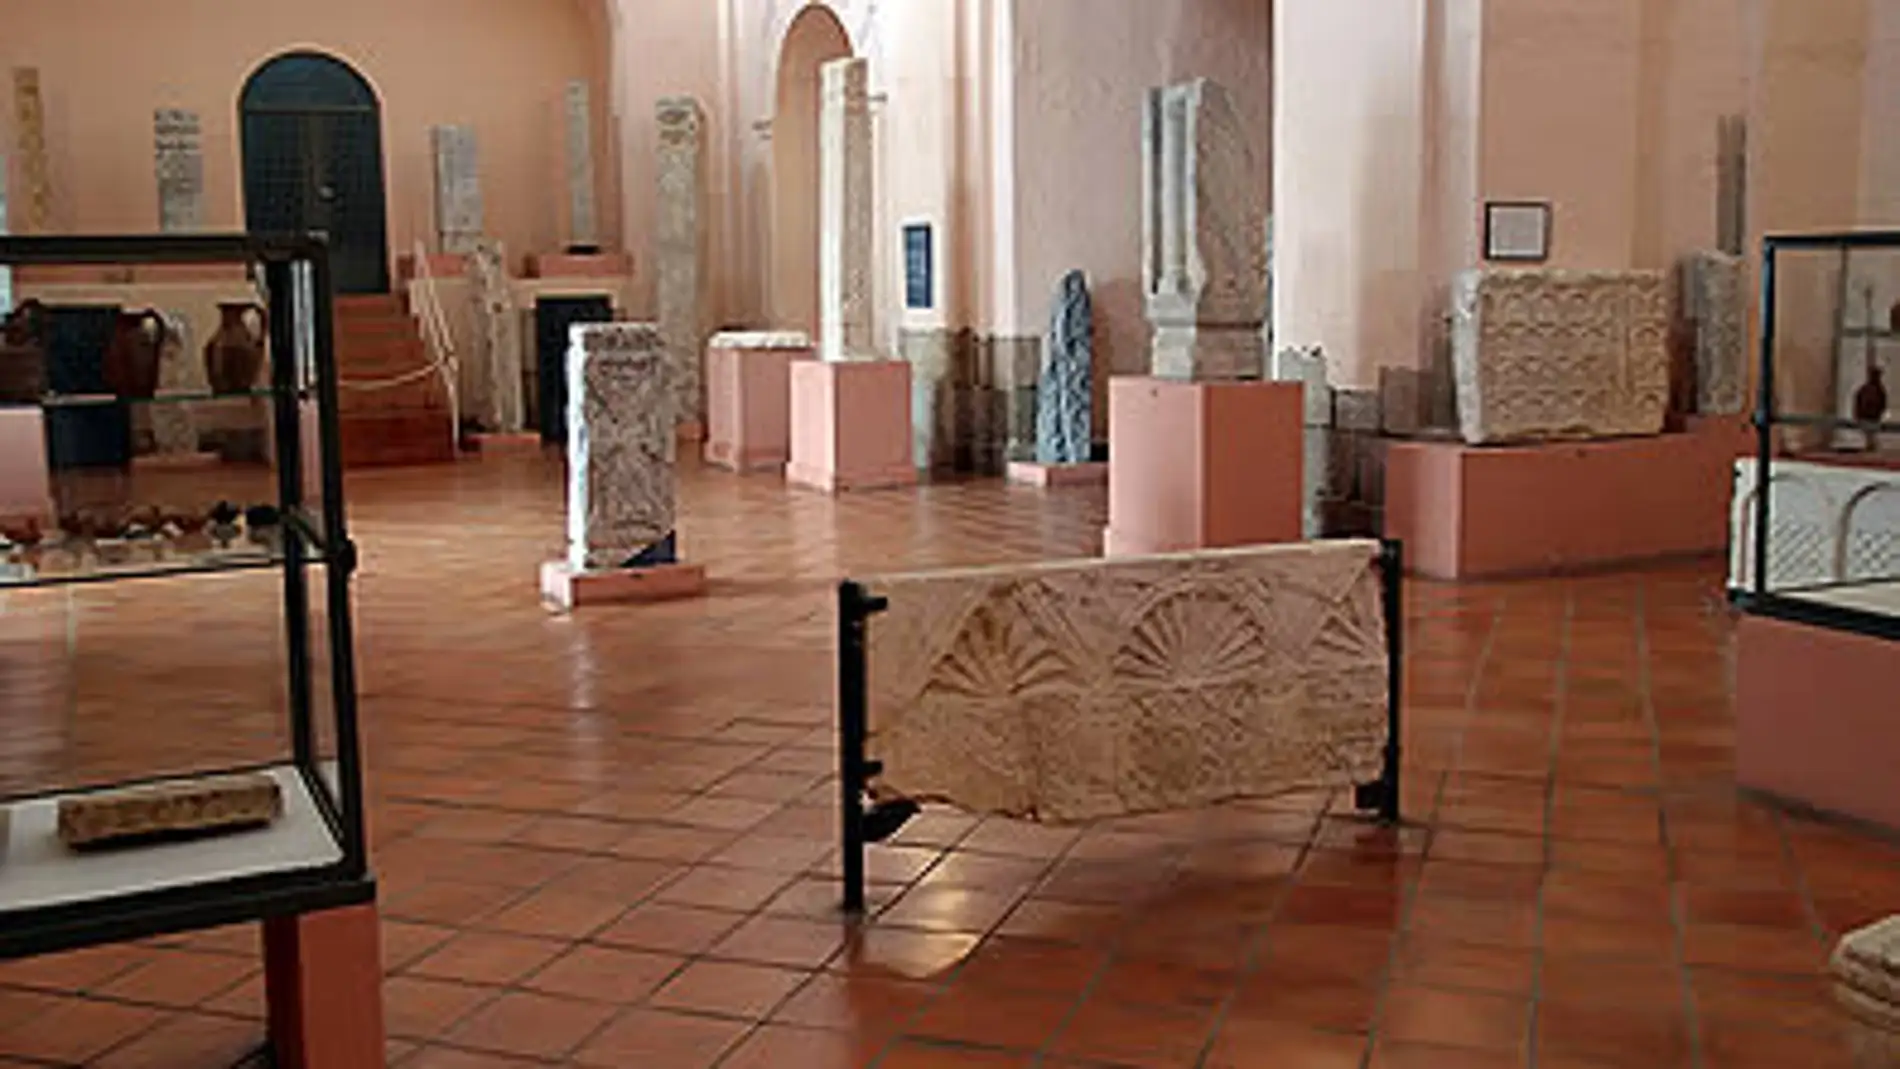 El DOE publica el acuerdo que posibilitará la construcción de la Sección Visigoda del Museo Nacional de Arte Romano